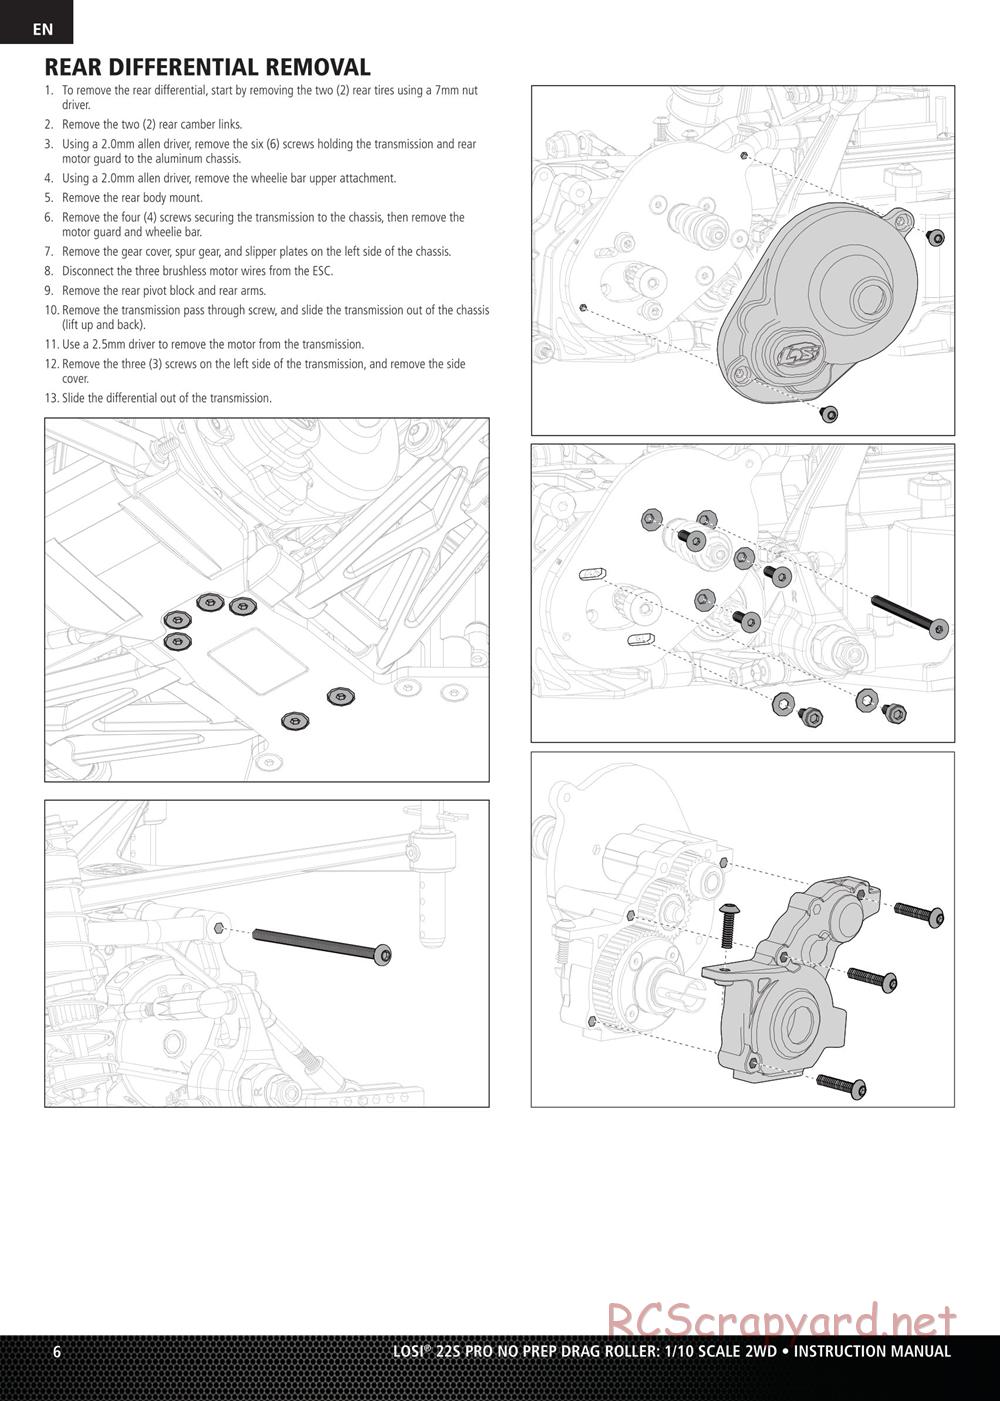 Team Losi - No Prep Drag Roller - Manual - Page 6